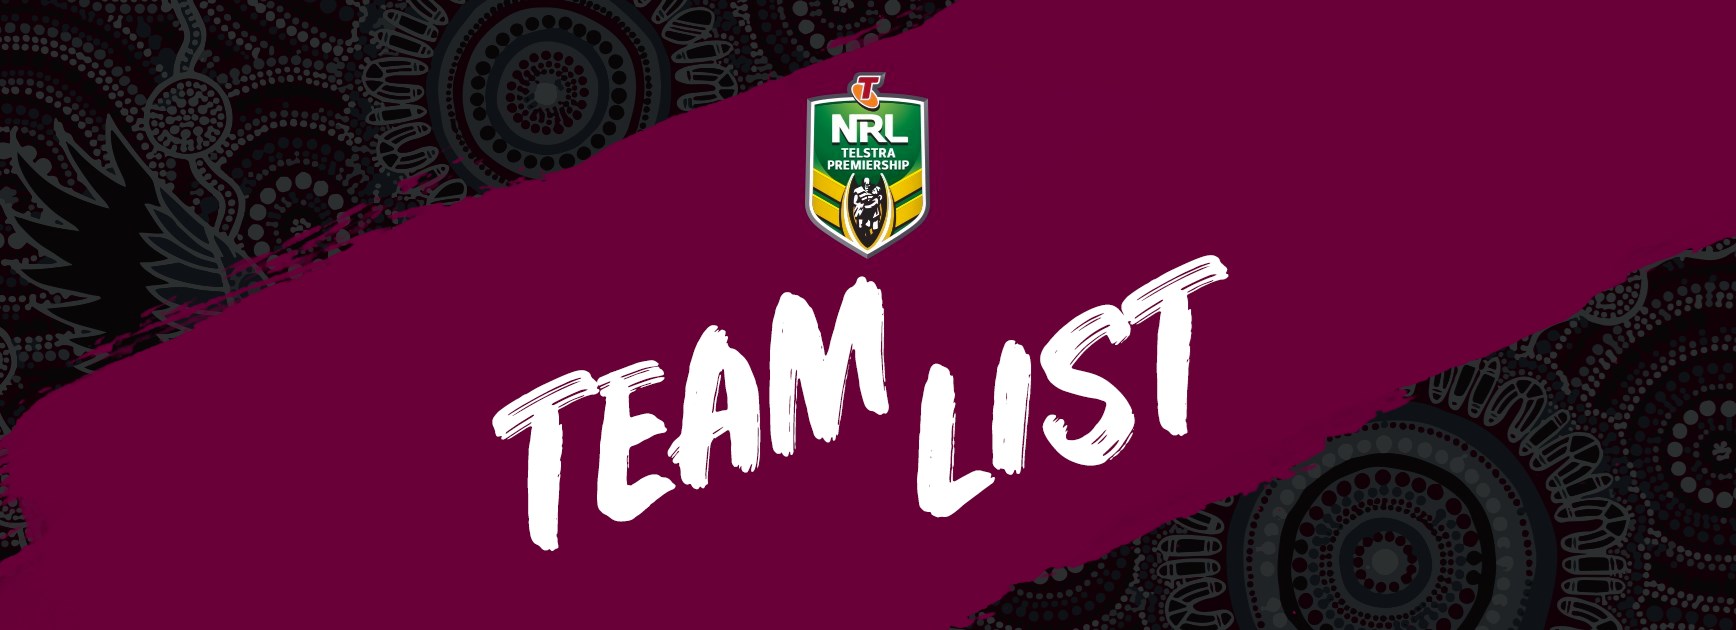 NRL Team List - Round 10